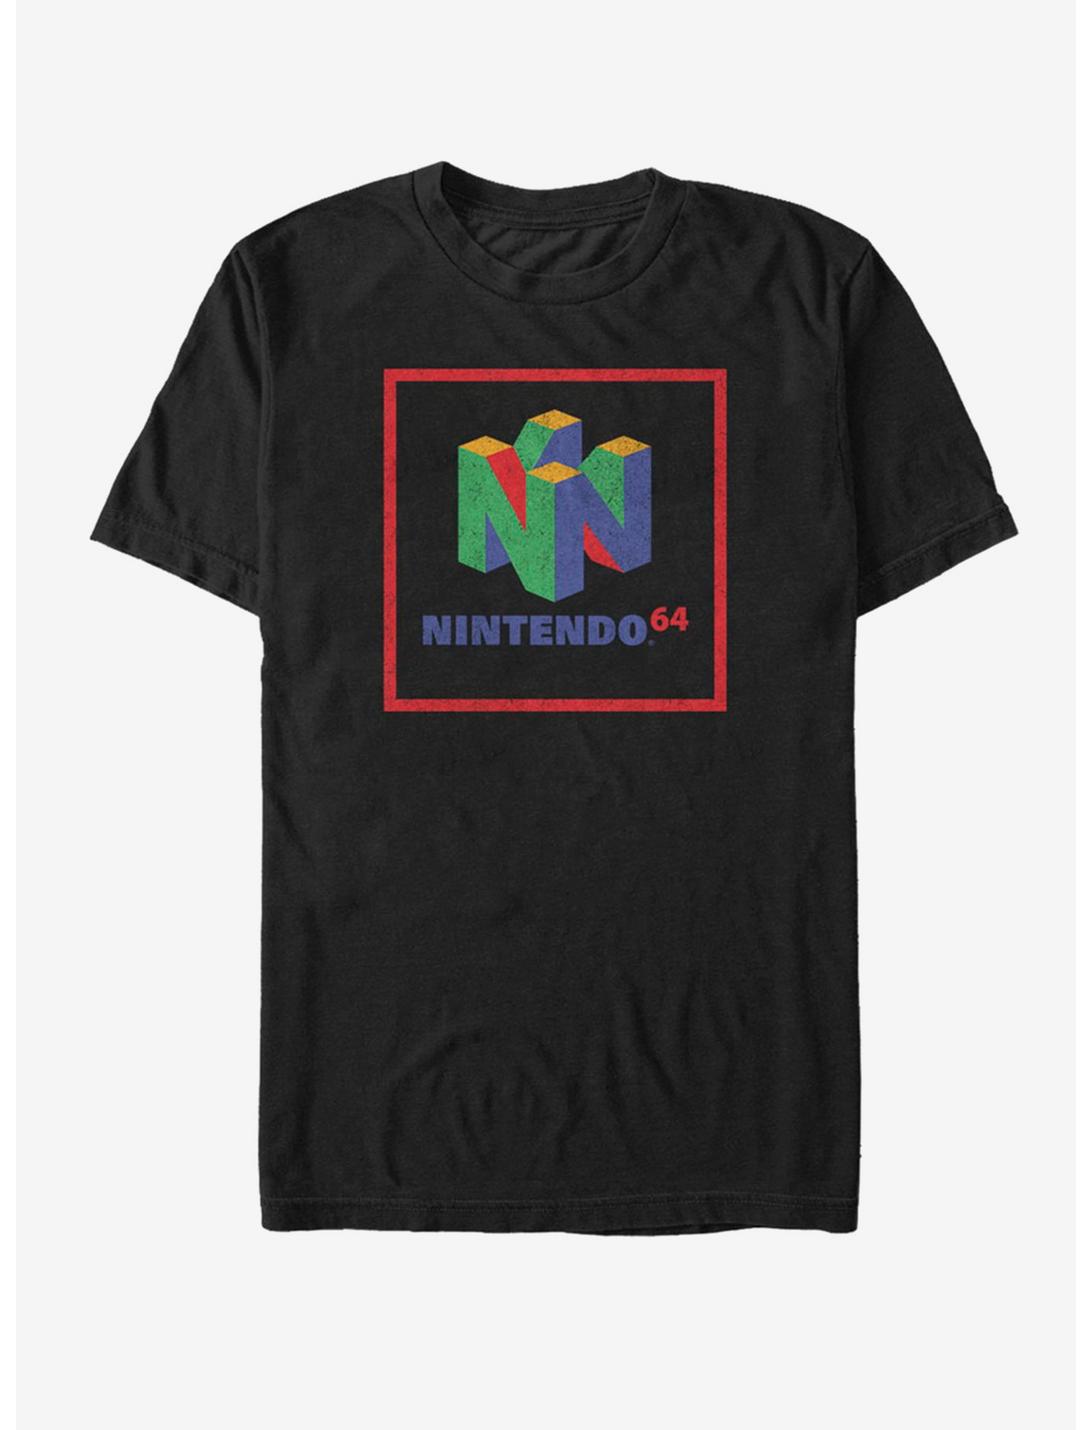 Nintendo Nintendo 64 Element T-Shirt, BLACK, hi-res